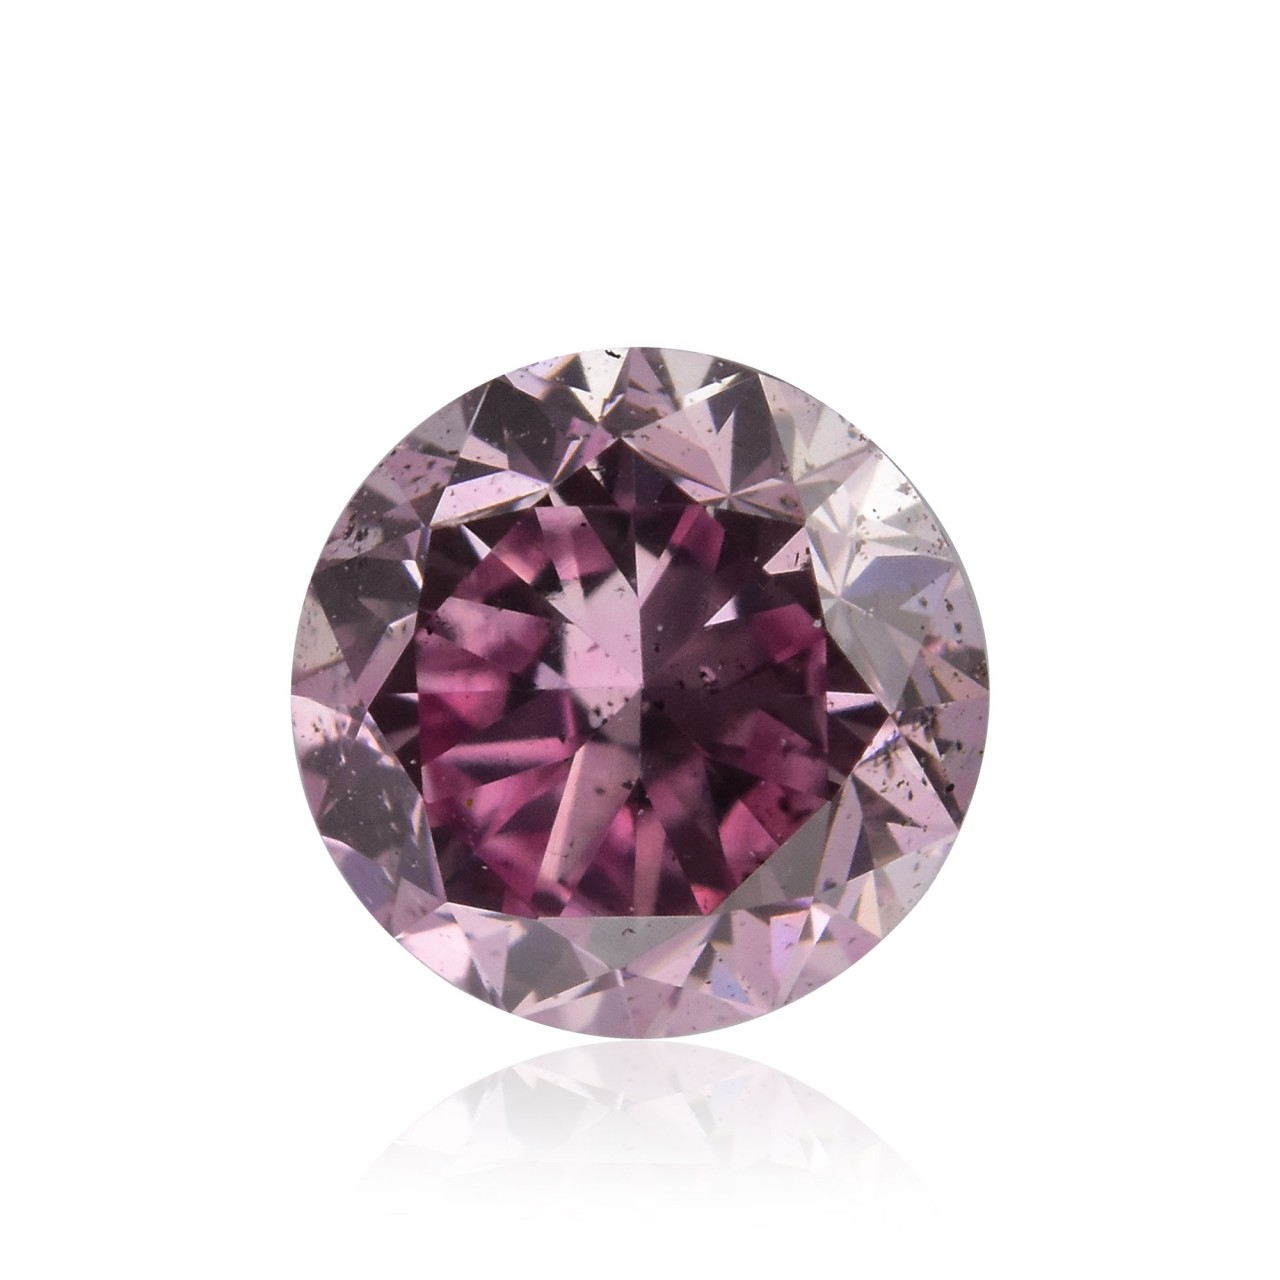 GIA Certified 3.15 Carat Fancy Pink Purple Heart Diamond Ring in